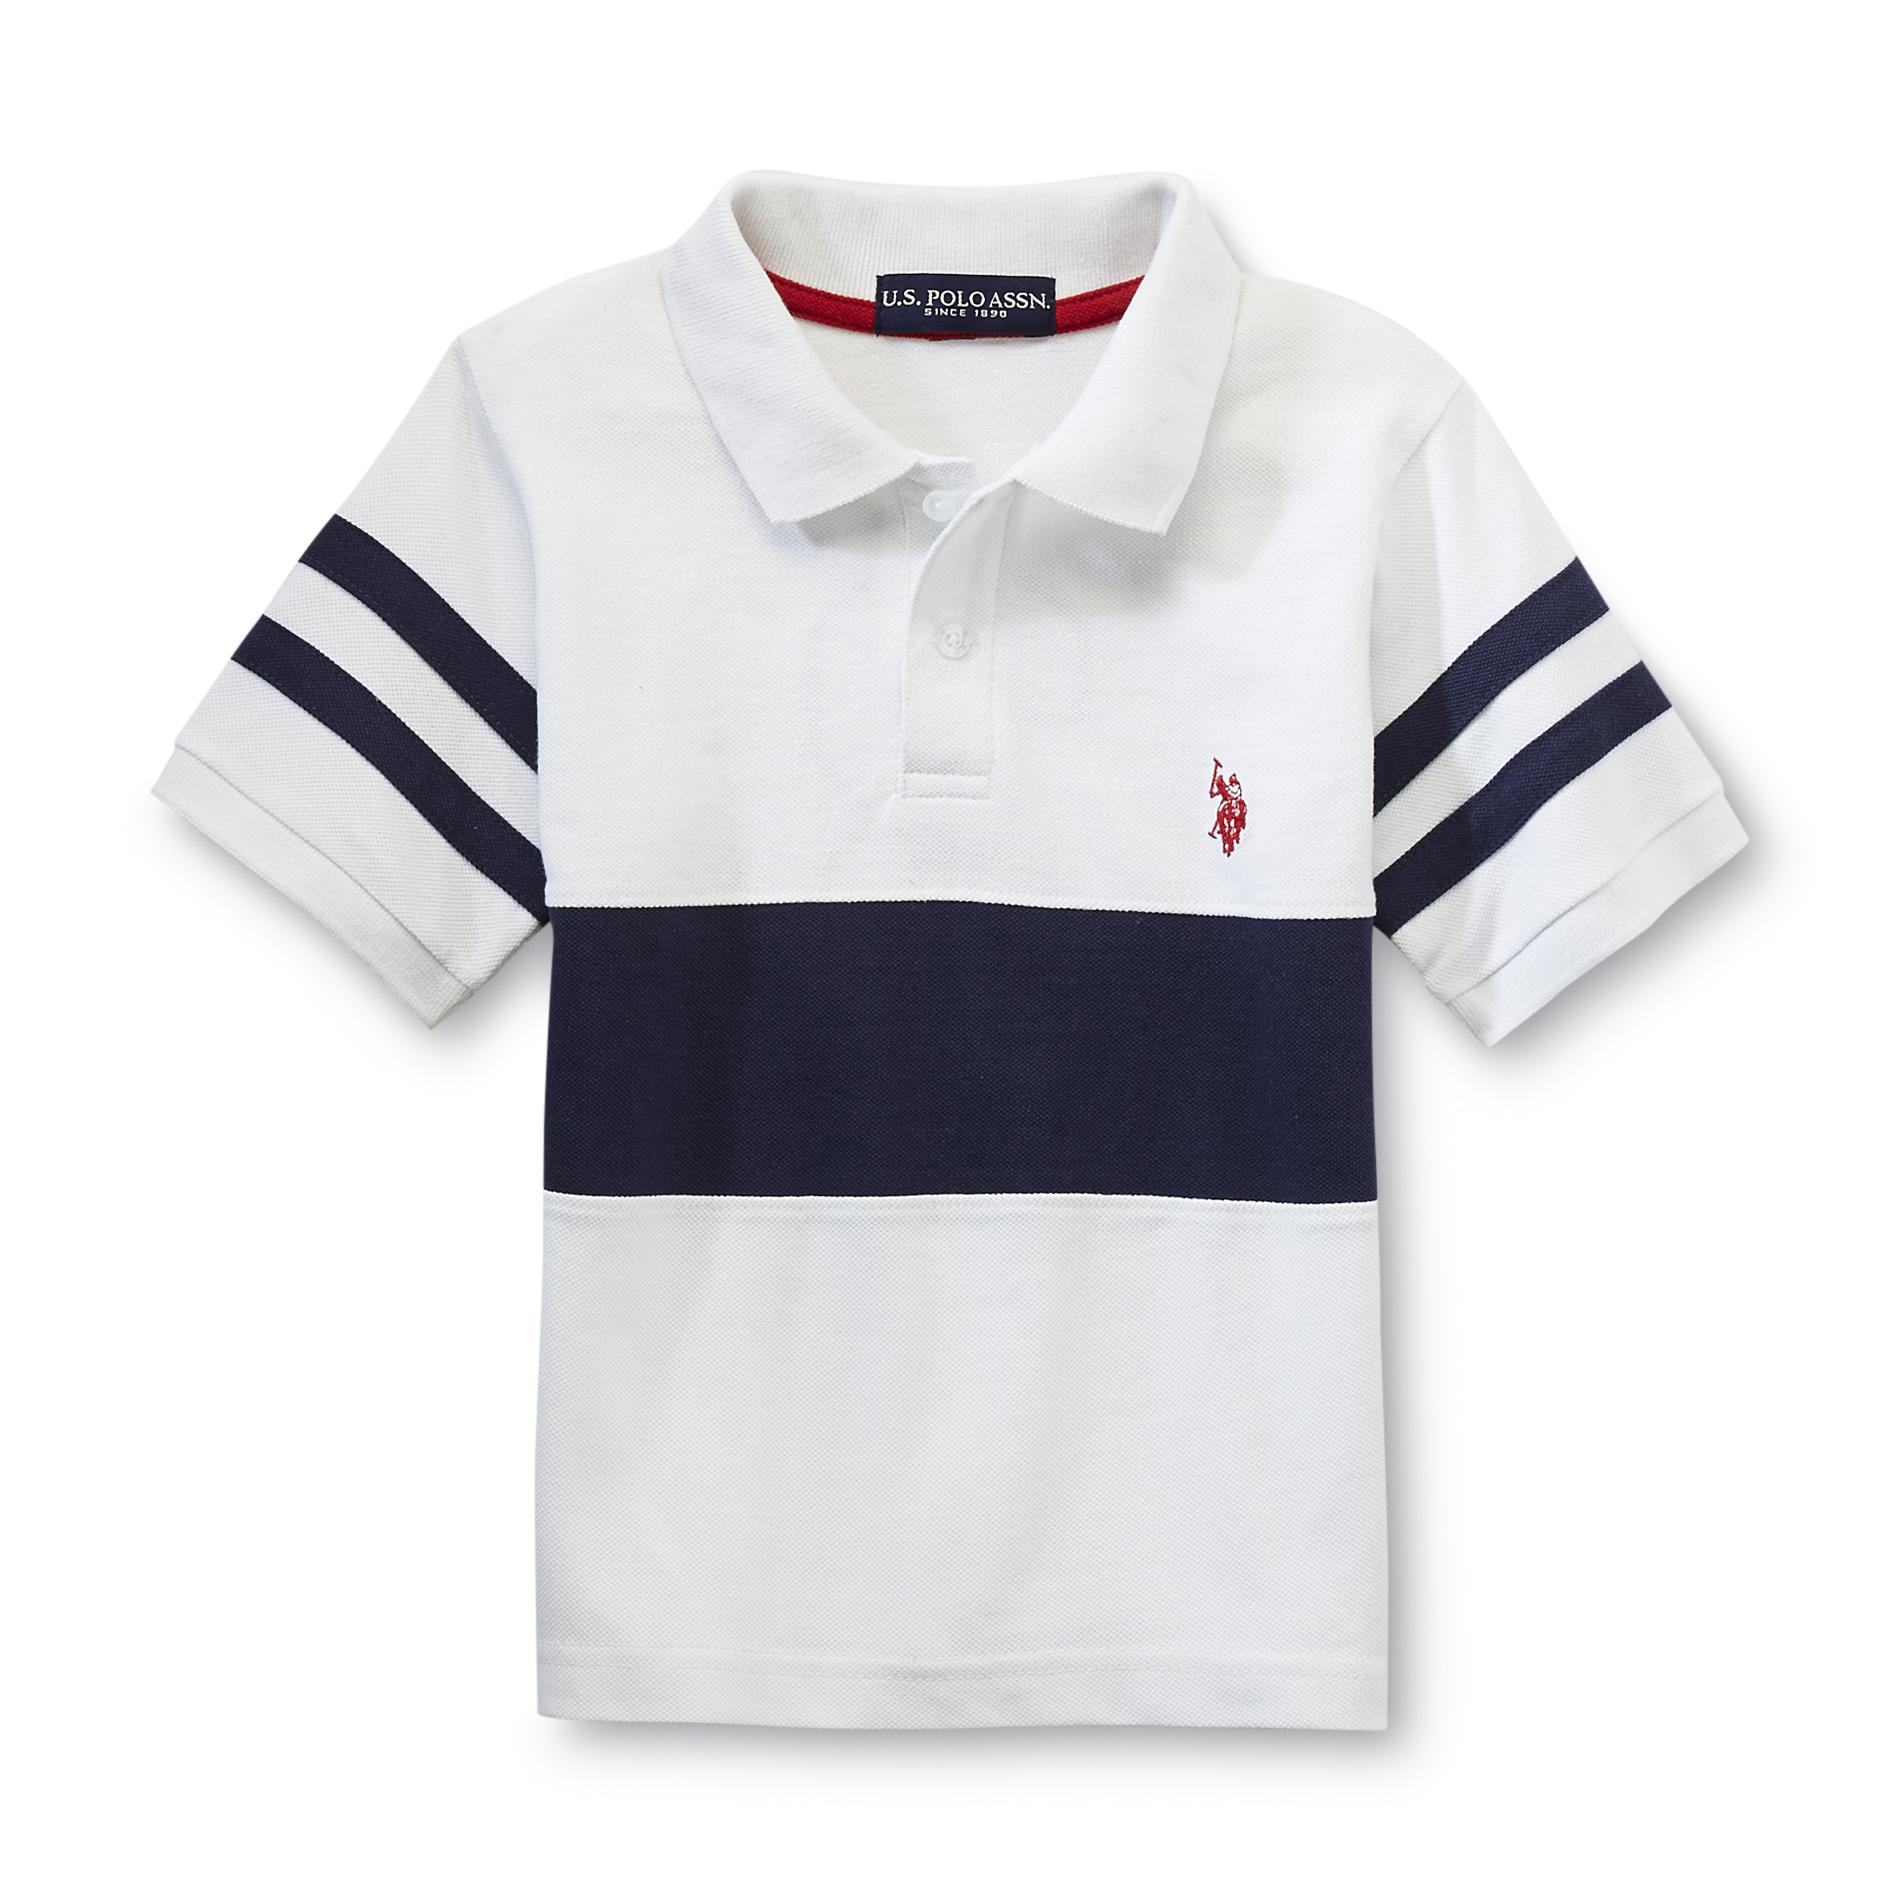 U.S. Polo Assn. Boy's Polo Shirt - Number Applique